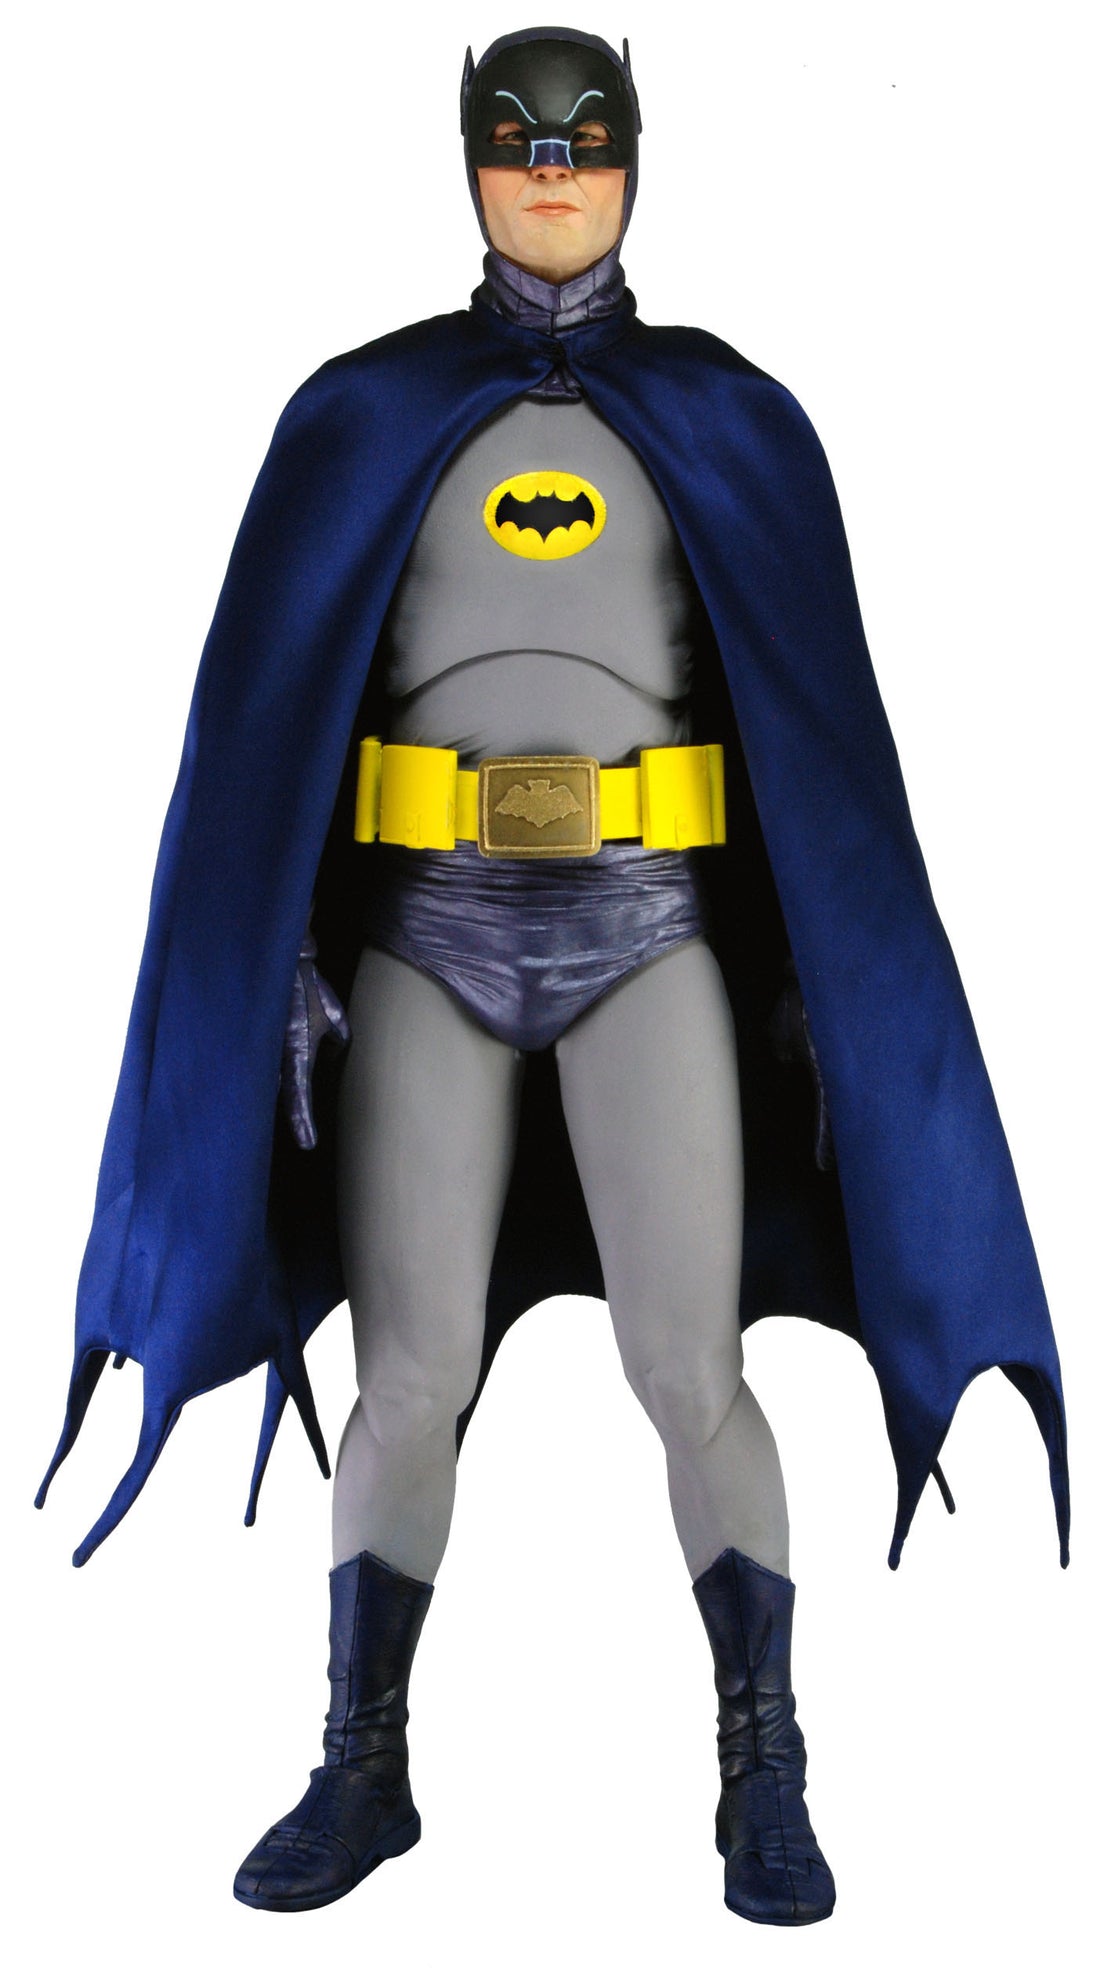 Quarter scale Adam West Batman action figure